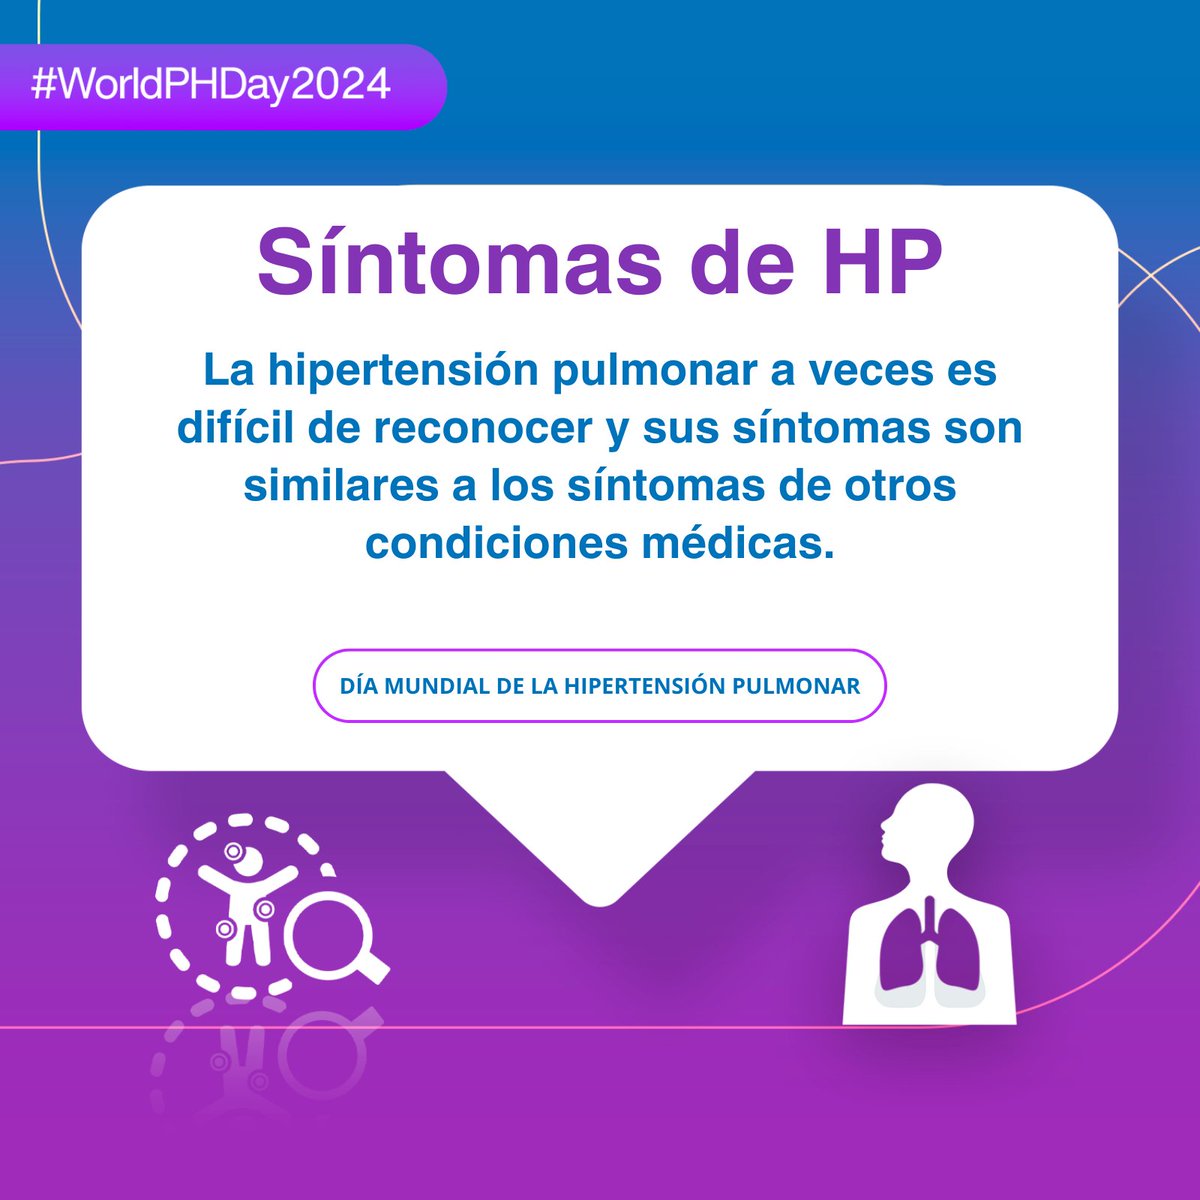 Reconocer los síntomas de la hipertensión pulmonar podría cambiar su vida o la de sus seres queridos. 

worldphday.org

#WorldPHDay2024 #WeBreatheUnited #WPHD #HipertensiónPulmonar #hpe #PHAEurope